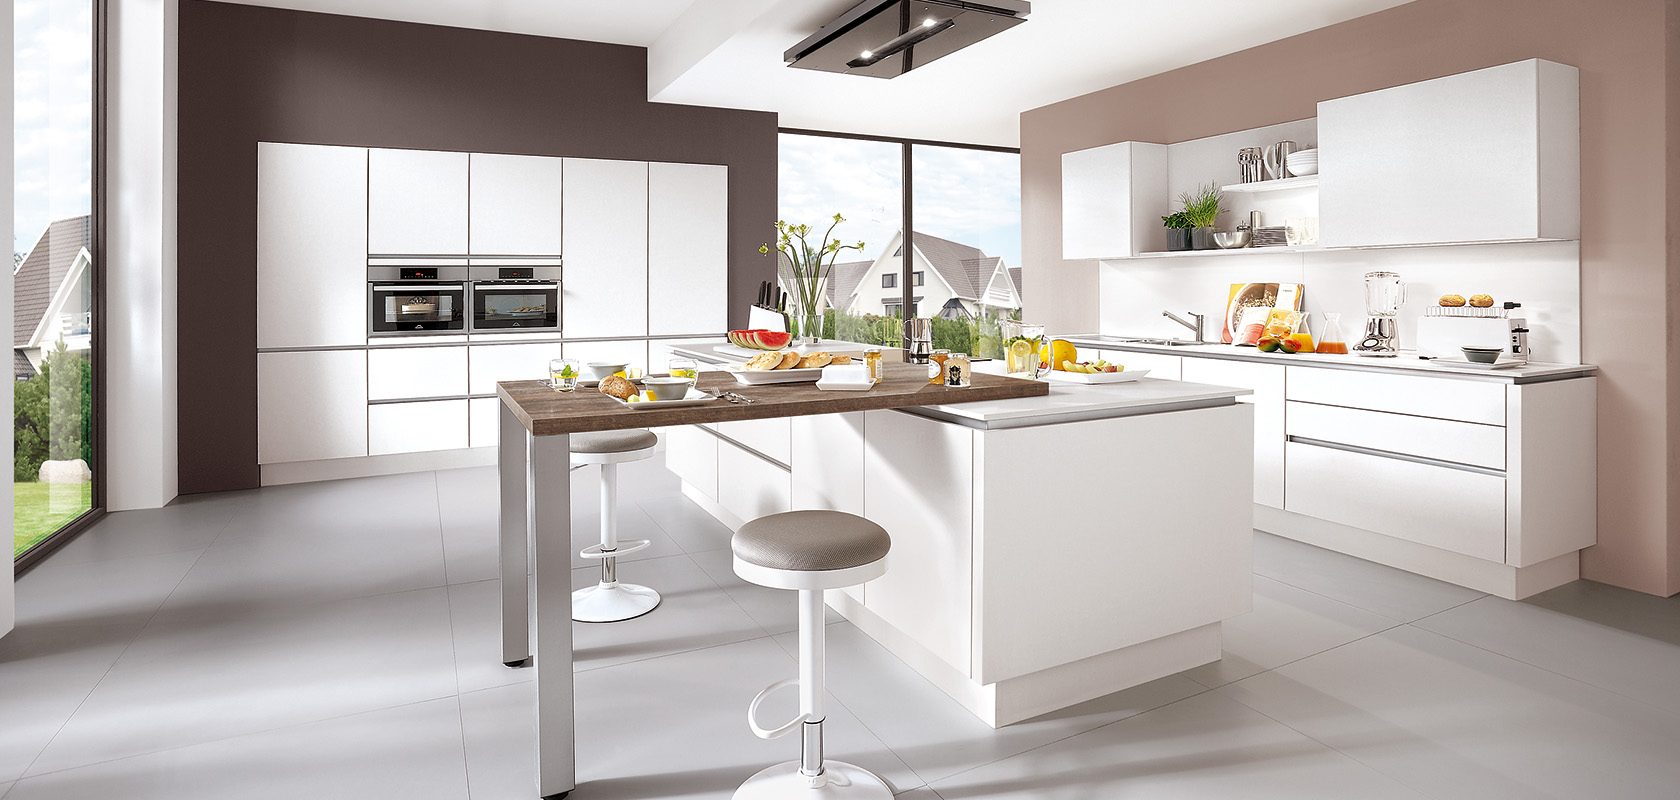 Interni di cucina moderni con piani di lavoro bianchi puliti, elettrodomestici integrati eleganti e un bancone per la colazione situato di fronte a grandi finestre con vista suburbana.